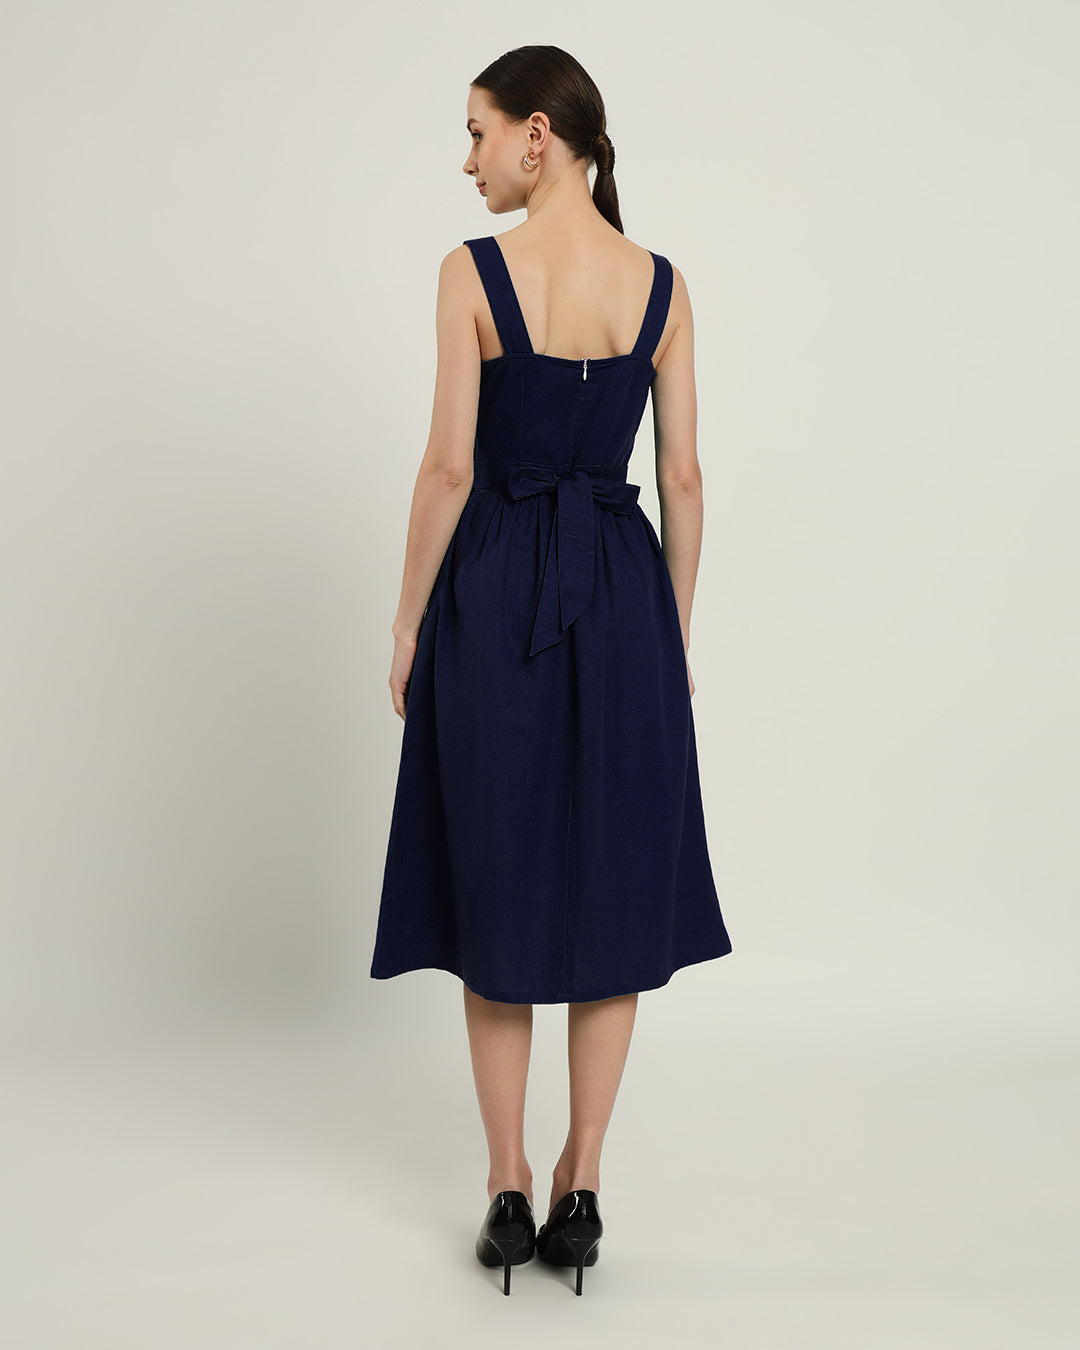 The Mihara Daisy Midnight Blue Linen Dress